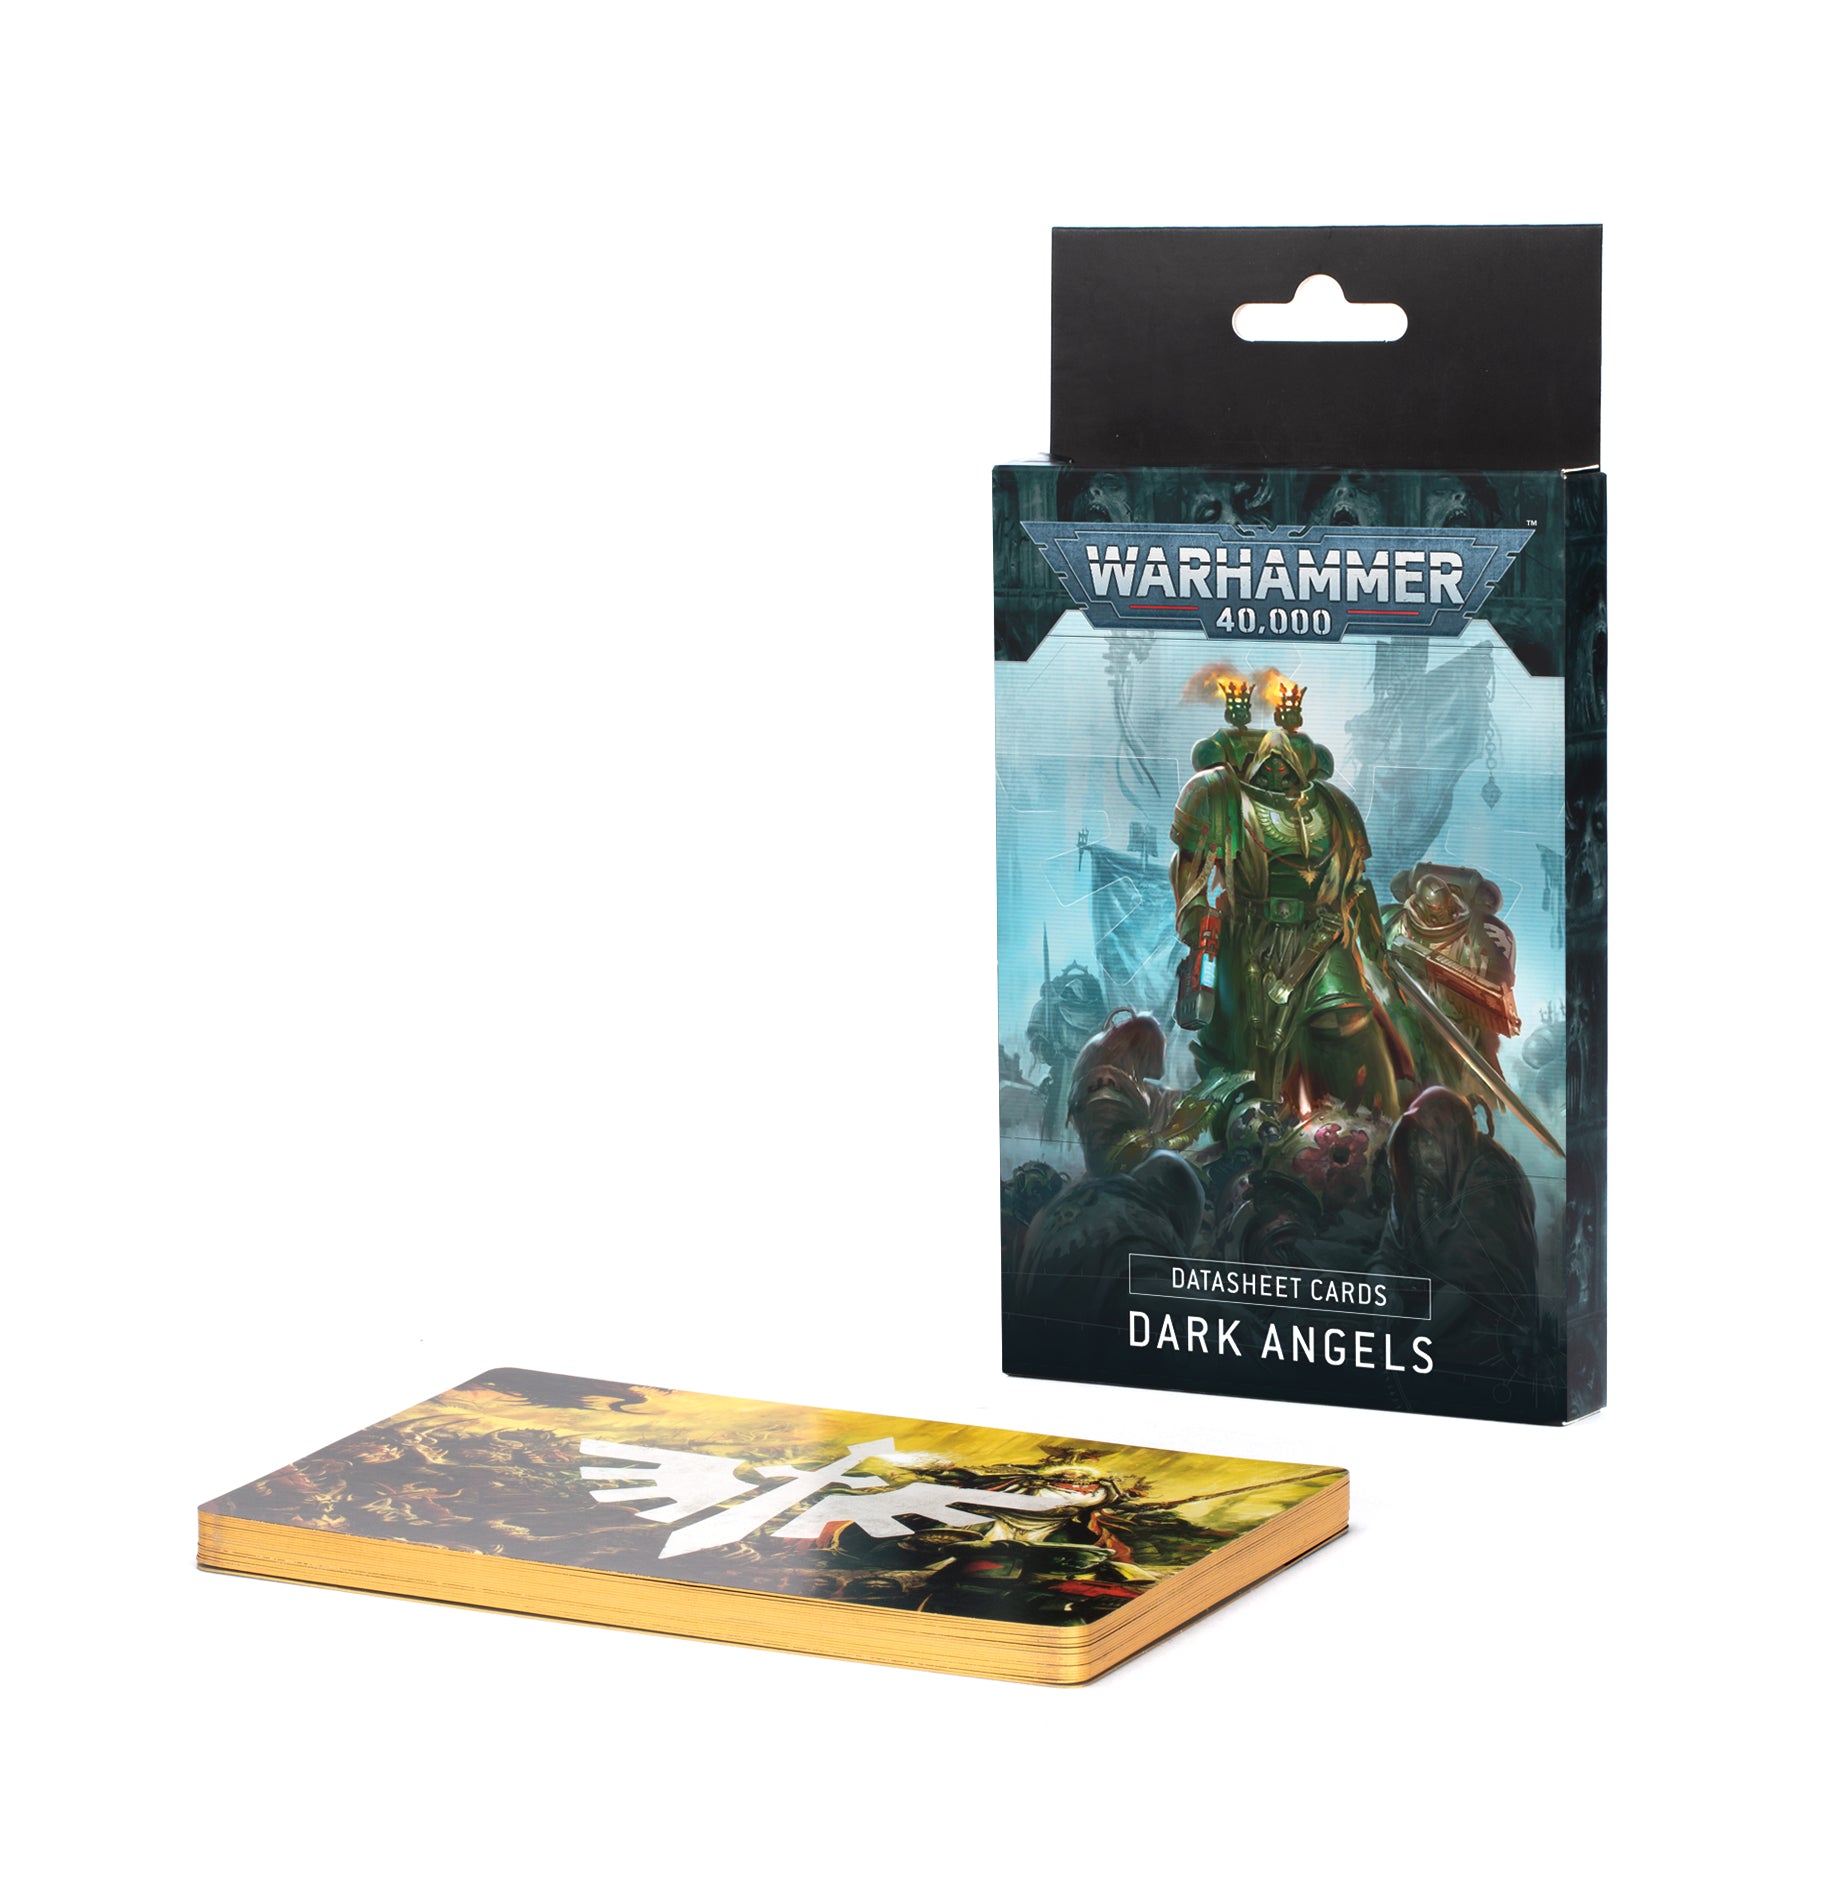 Warhammer 40,000: Datasheet Cards - Dark Angels 10th Edition